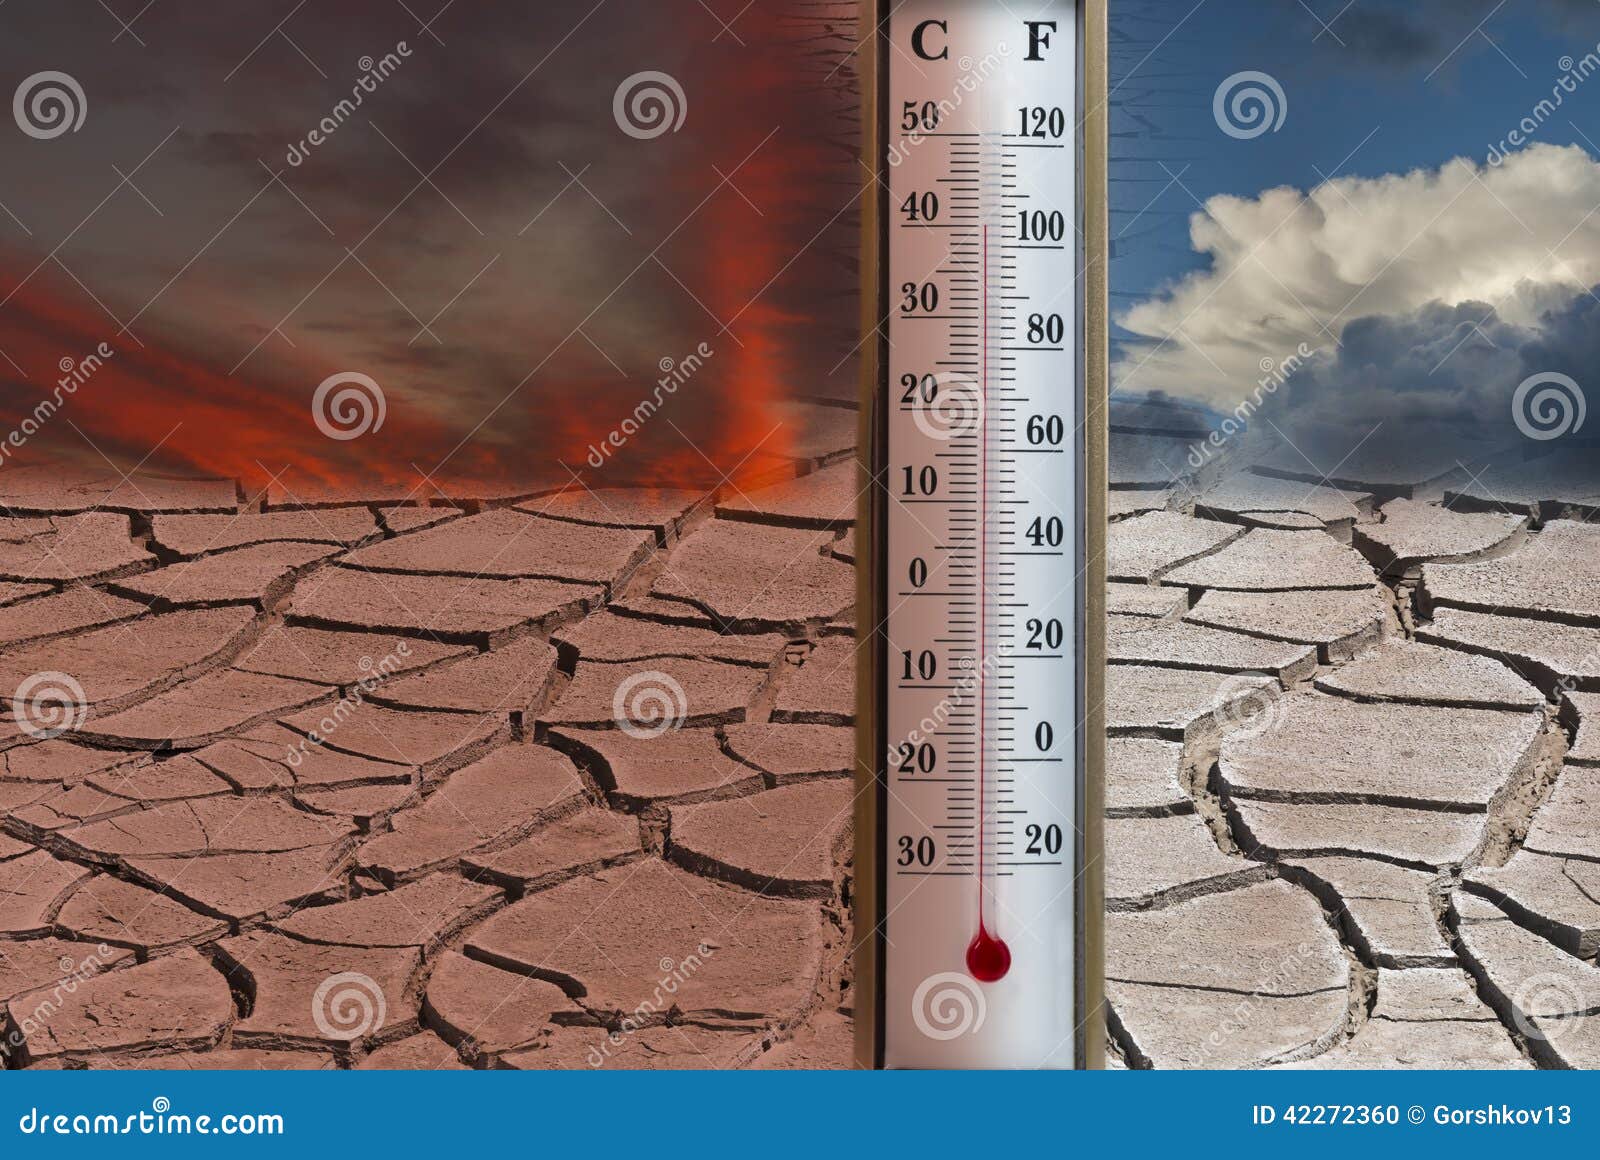 Почему влажная почва прогревается быстрее. Повышение температуры земли. Высокая температура. Изменение климата на планете. Изучение изменения климата.